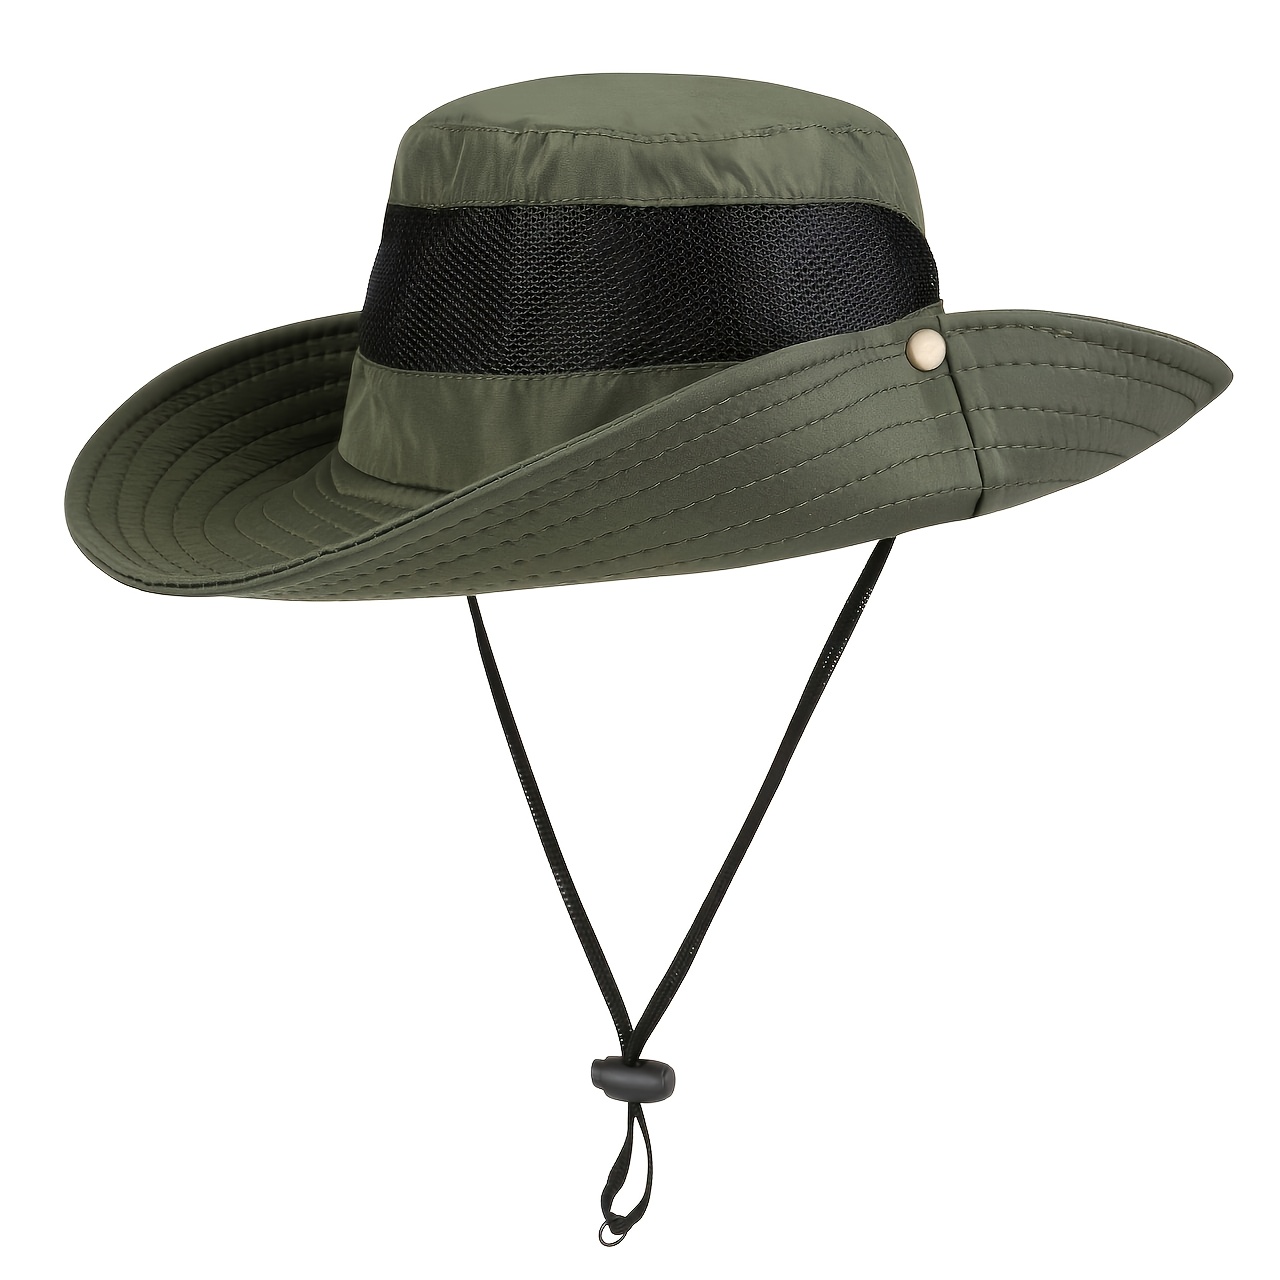  Sombrero de sol para hombre al aire libre de verano